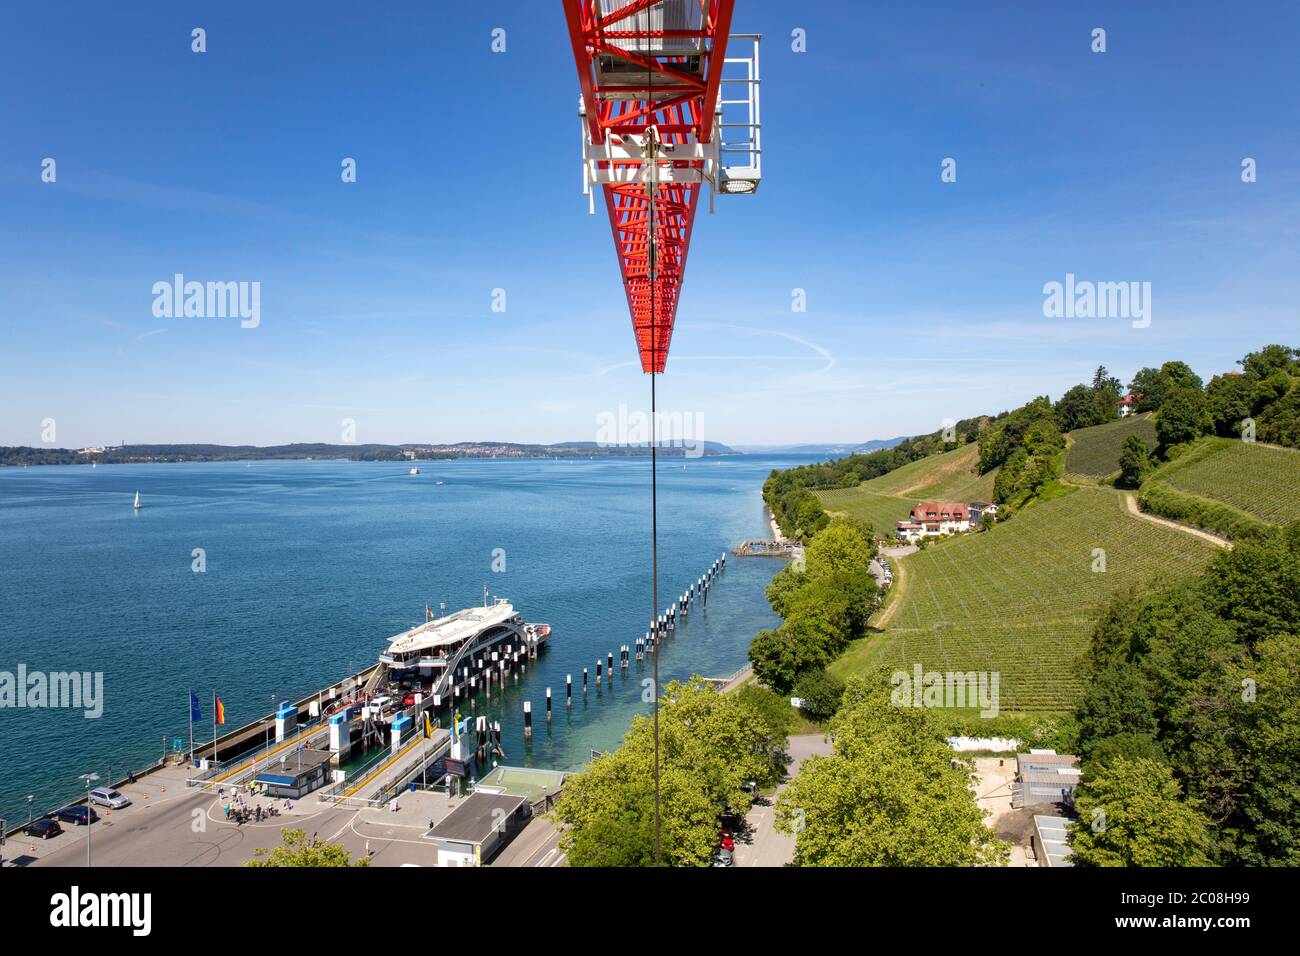 Turmdrehkran am Bodensee für neues städtisches Parkhaus am Fährhafen. Meersburg, 27.05.2020 Stock Photo